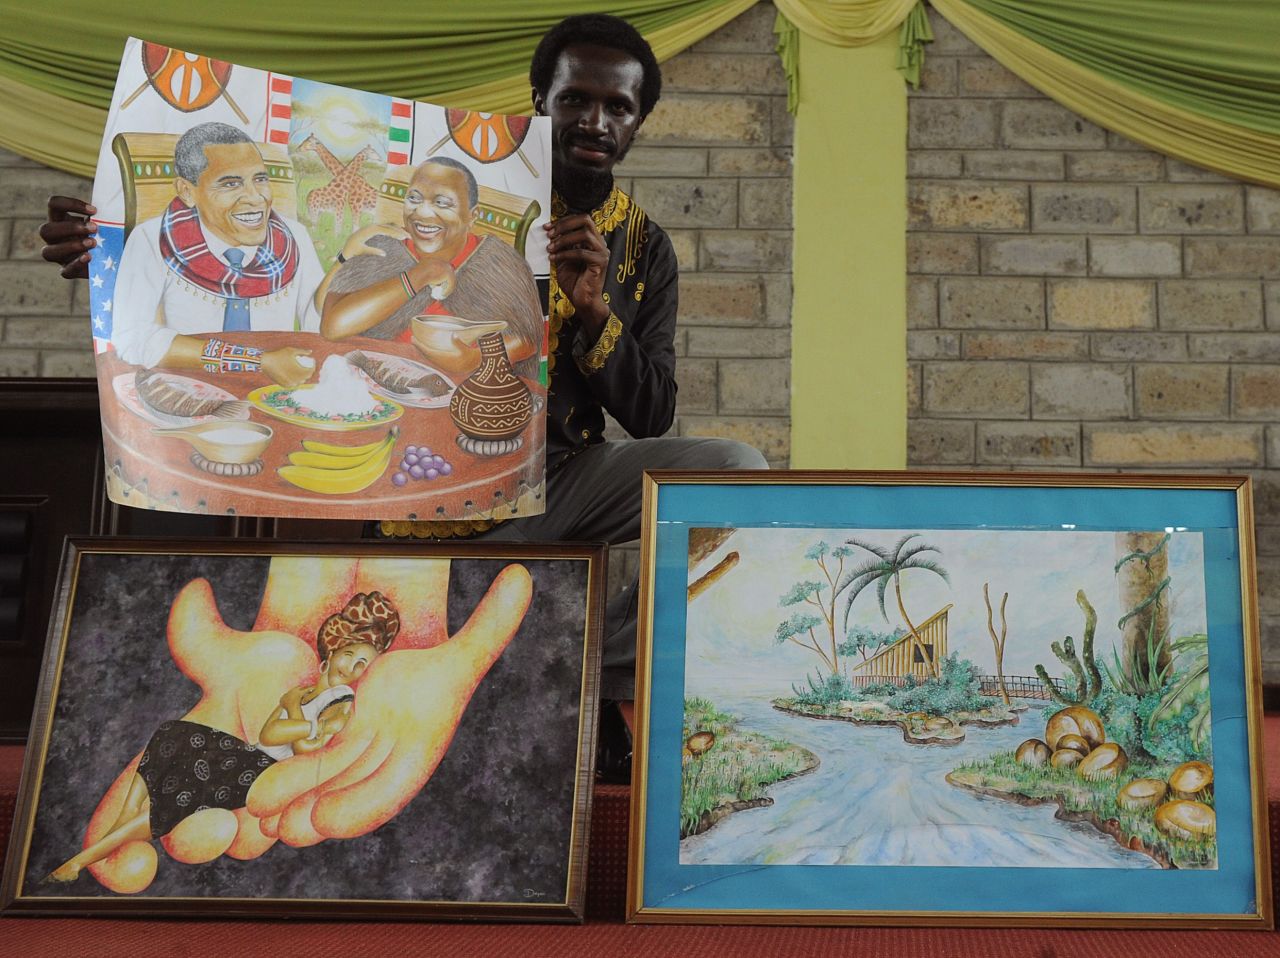 Kenyan artist Dayan Masinde shows several of his artworks including one depicting Obama next to Kenyan President Uhuru Kenyatta, sharing a Kenyan dish.